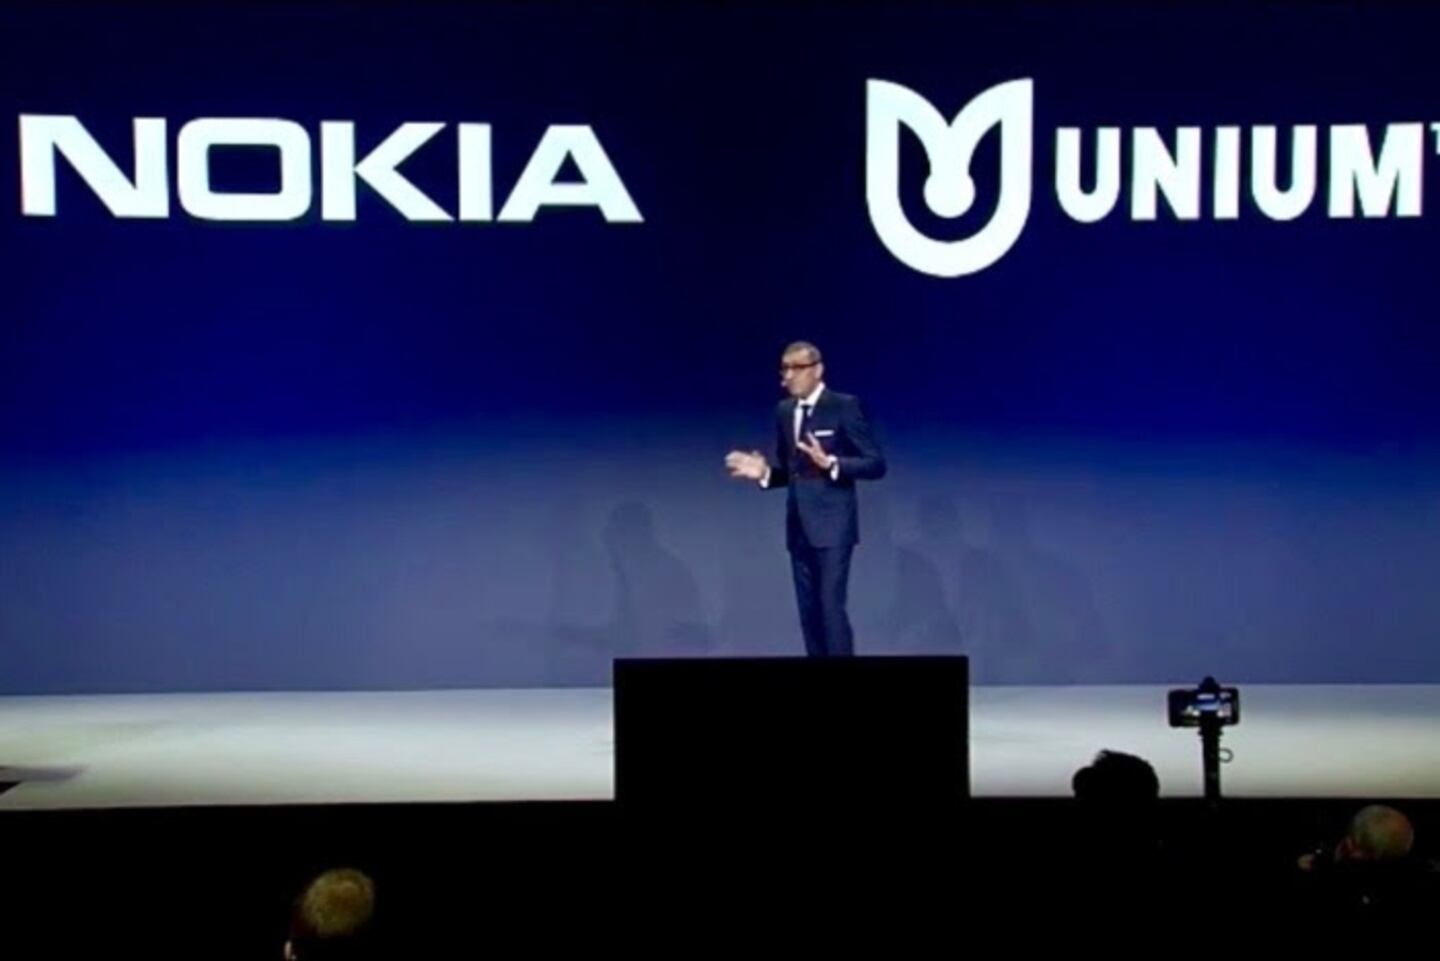 Nokia adquirió Unium para dar un gran empuje al WiFi en el hogar